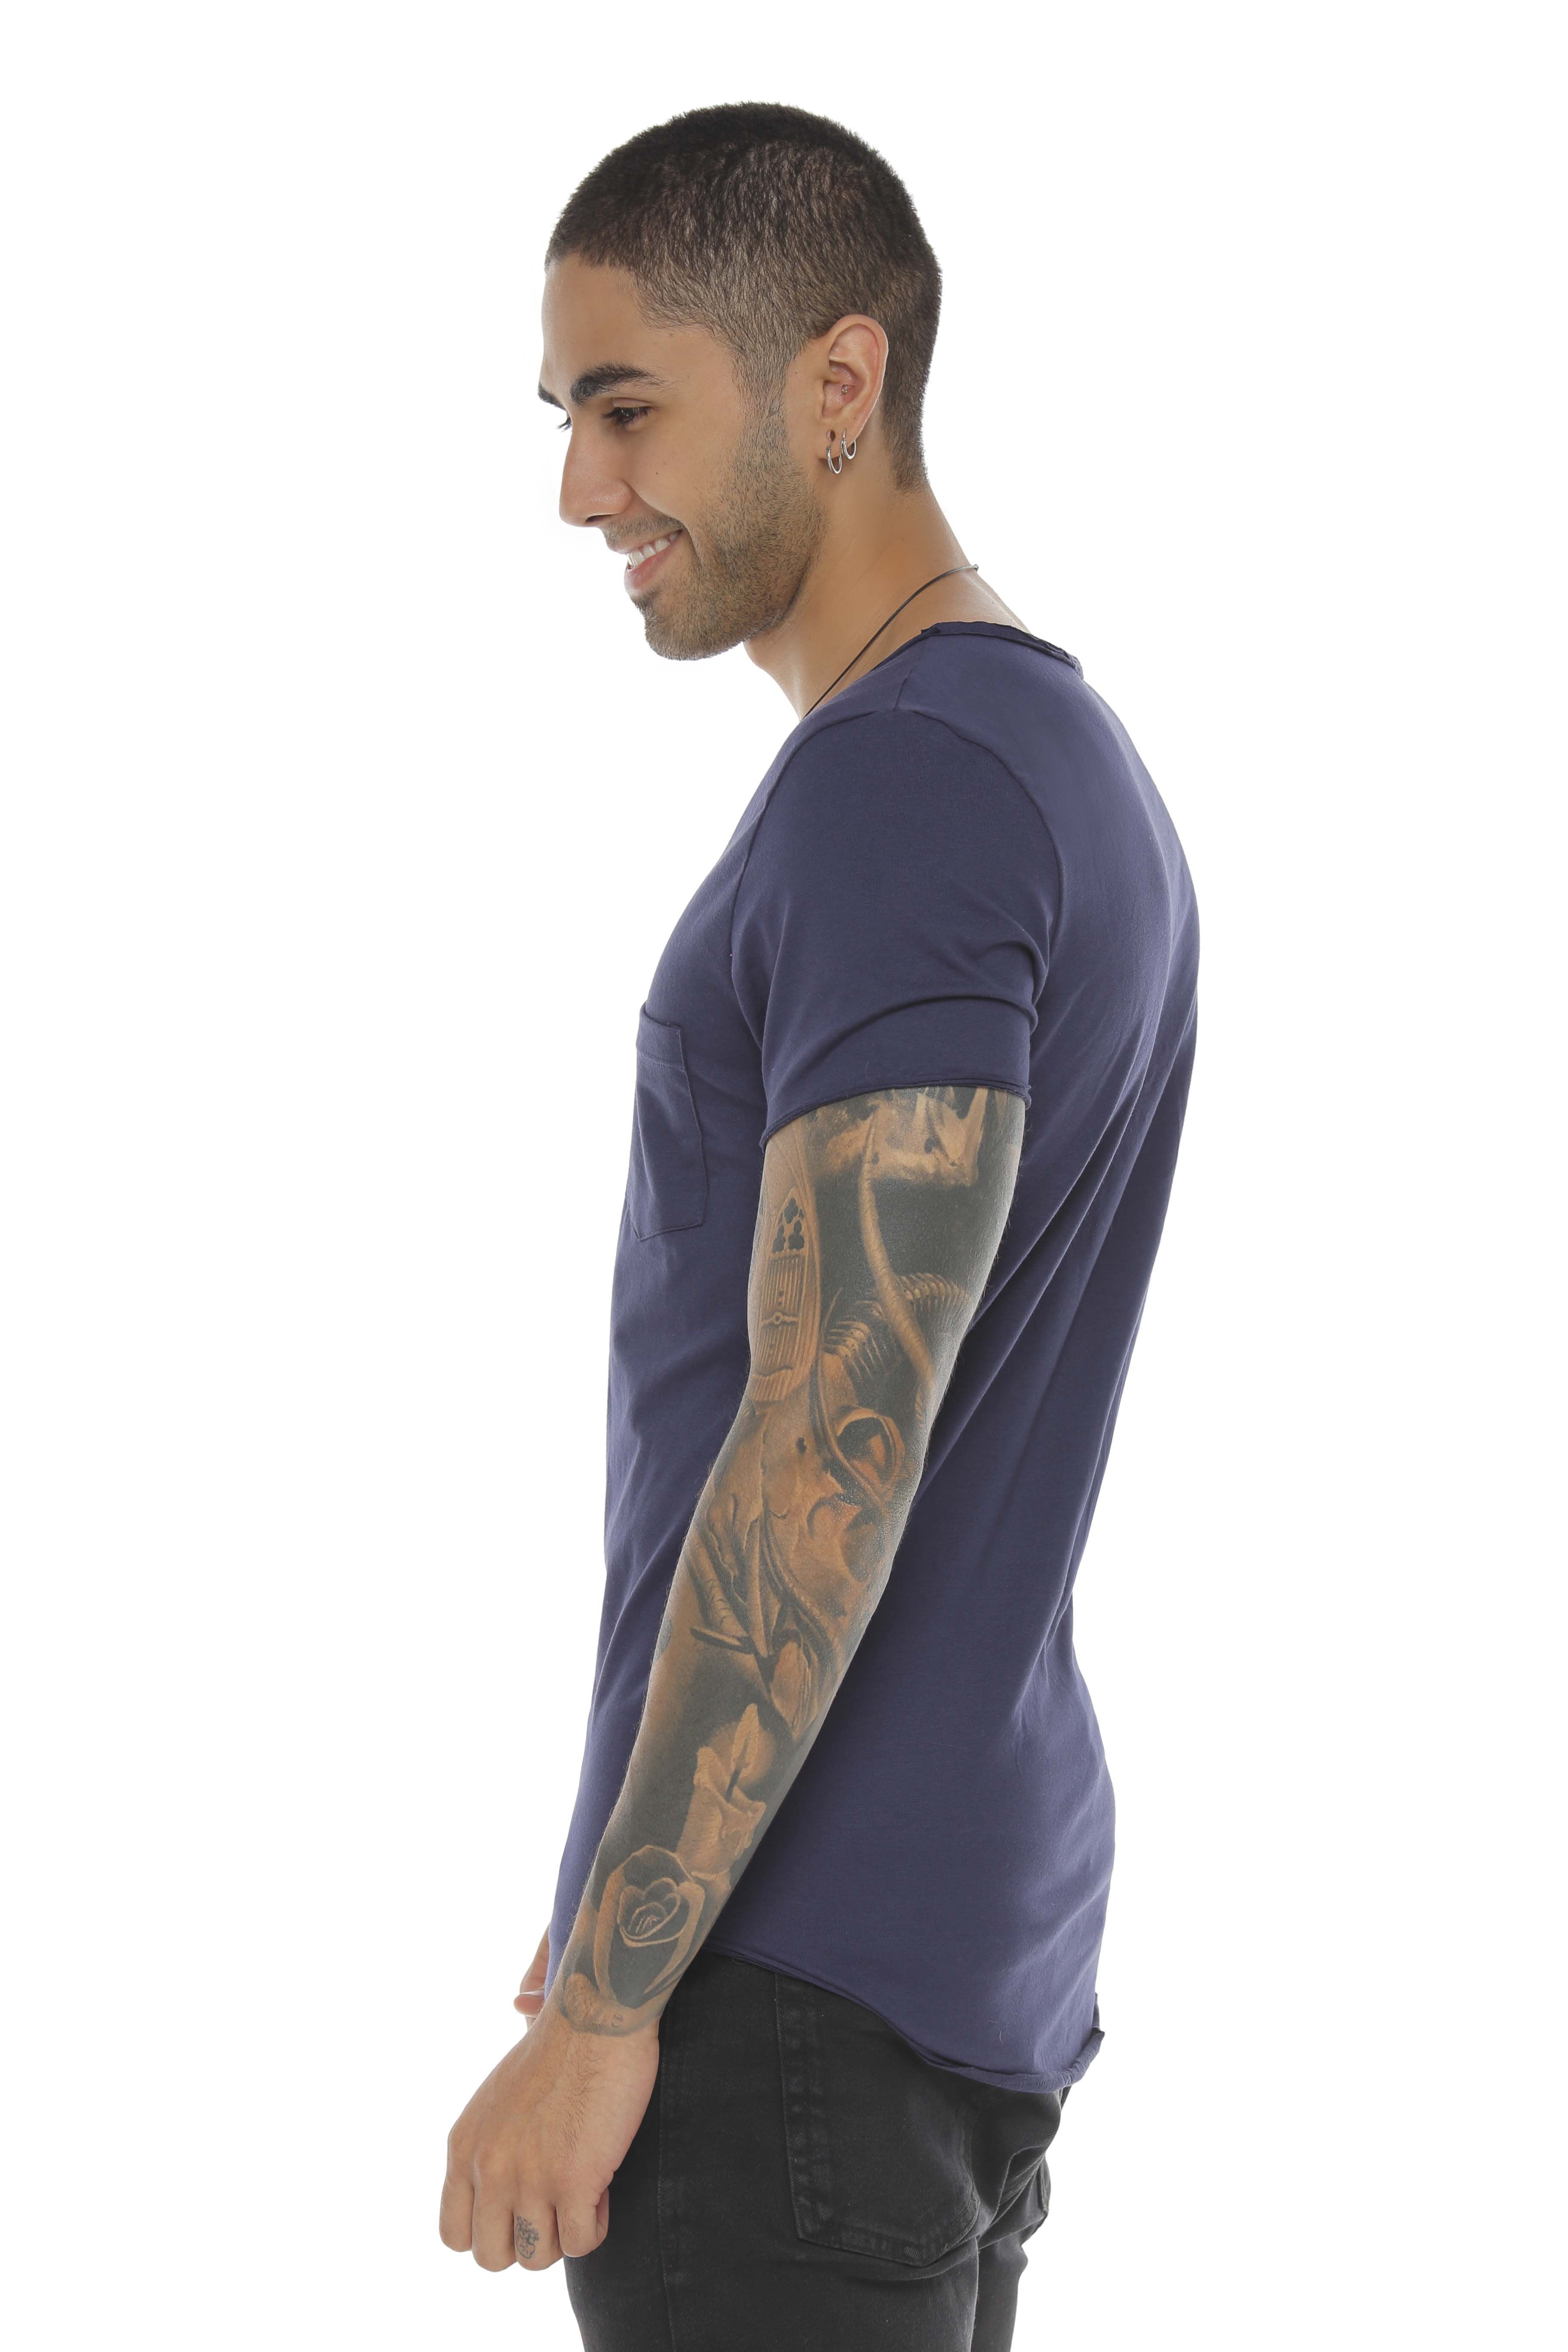 Camiseta Vazzic 100% algodón deportiva para Hombre 